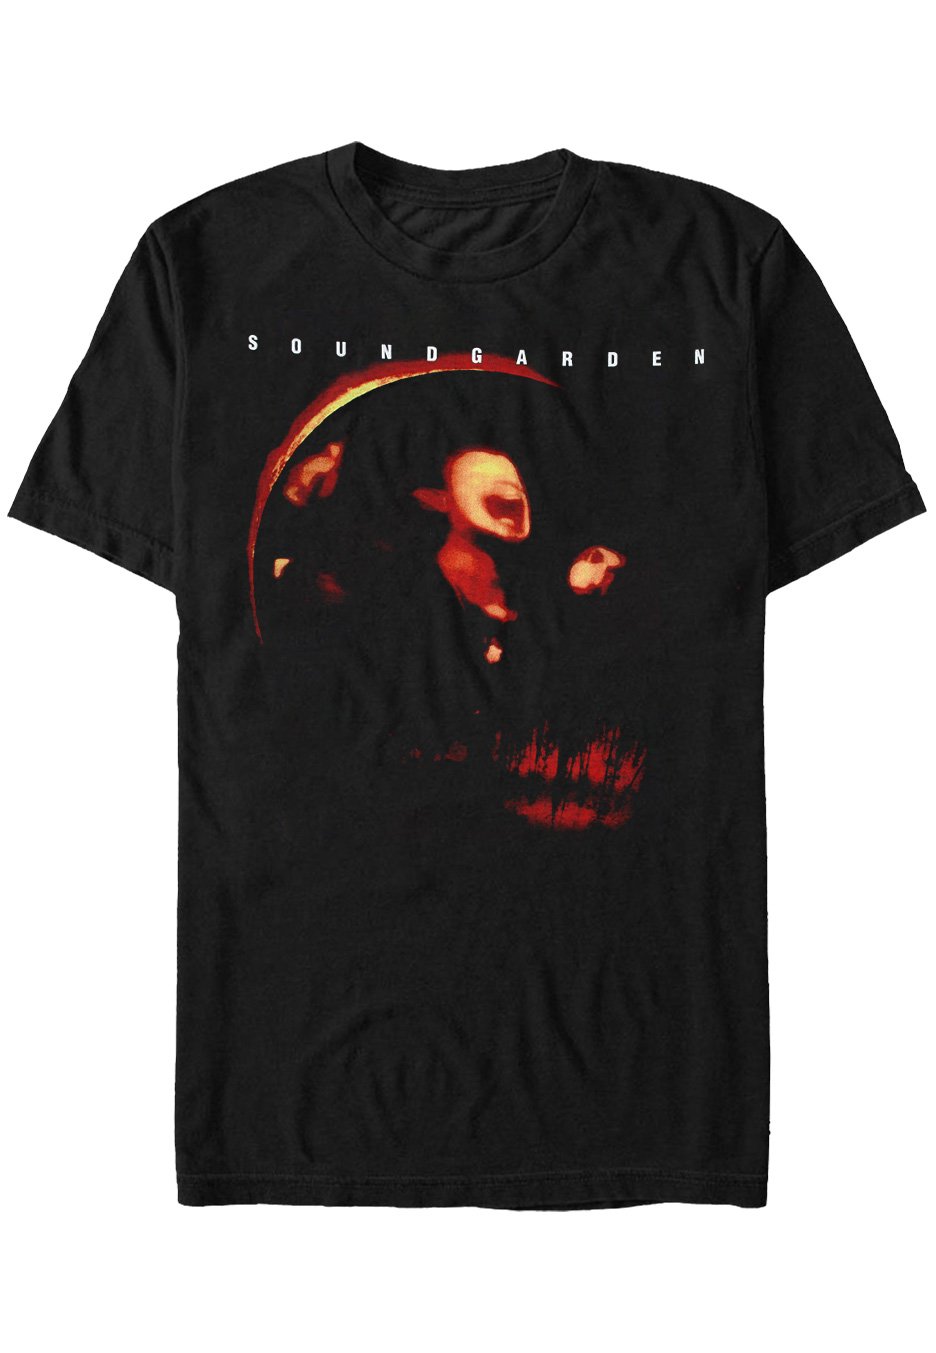 Soundgarden - Superunknown - T-Shirt | Neutral-Image